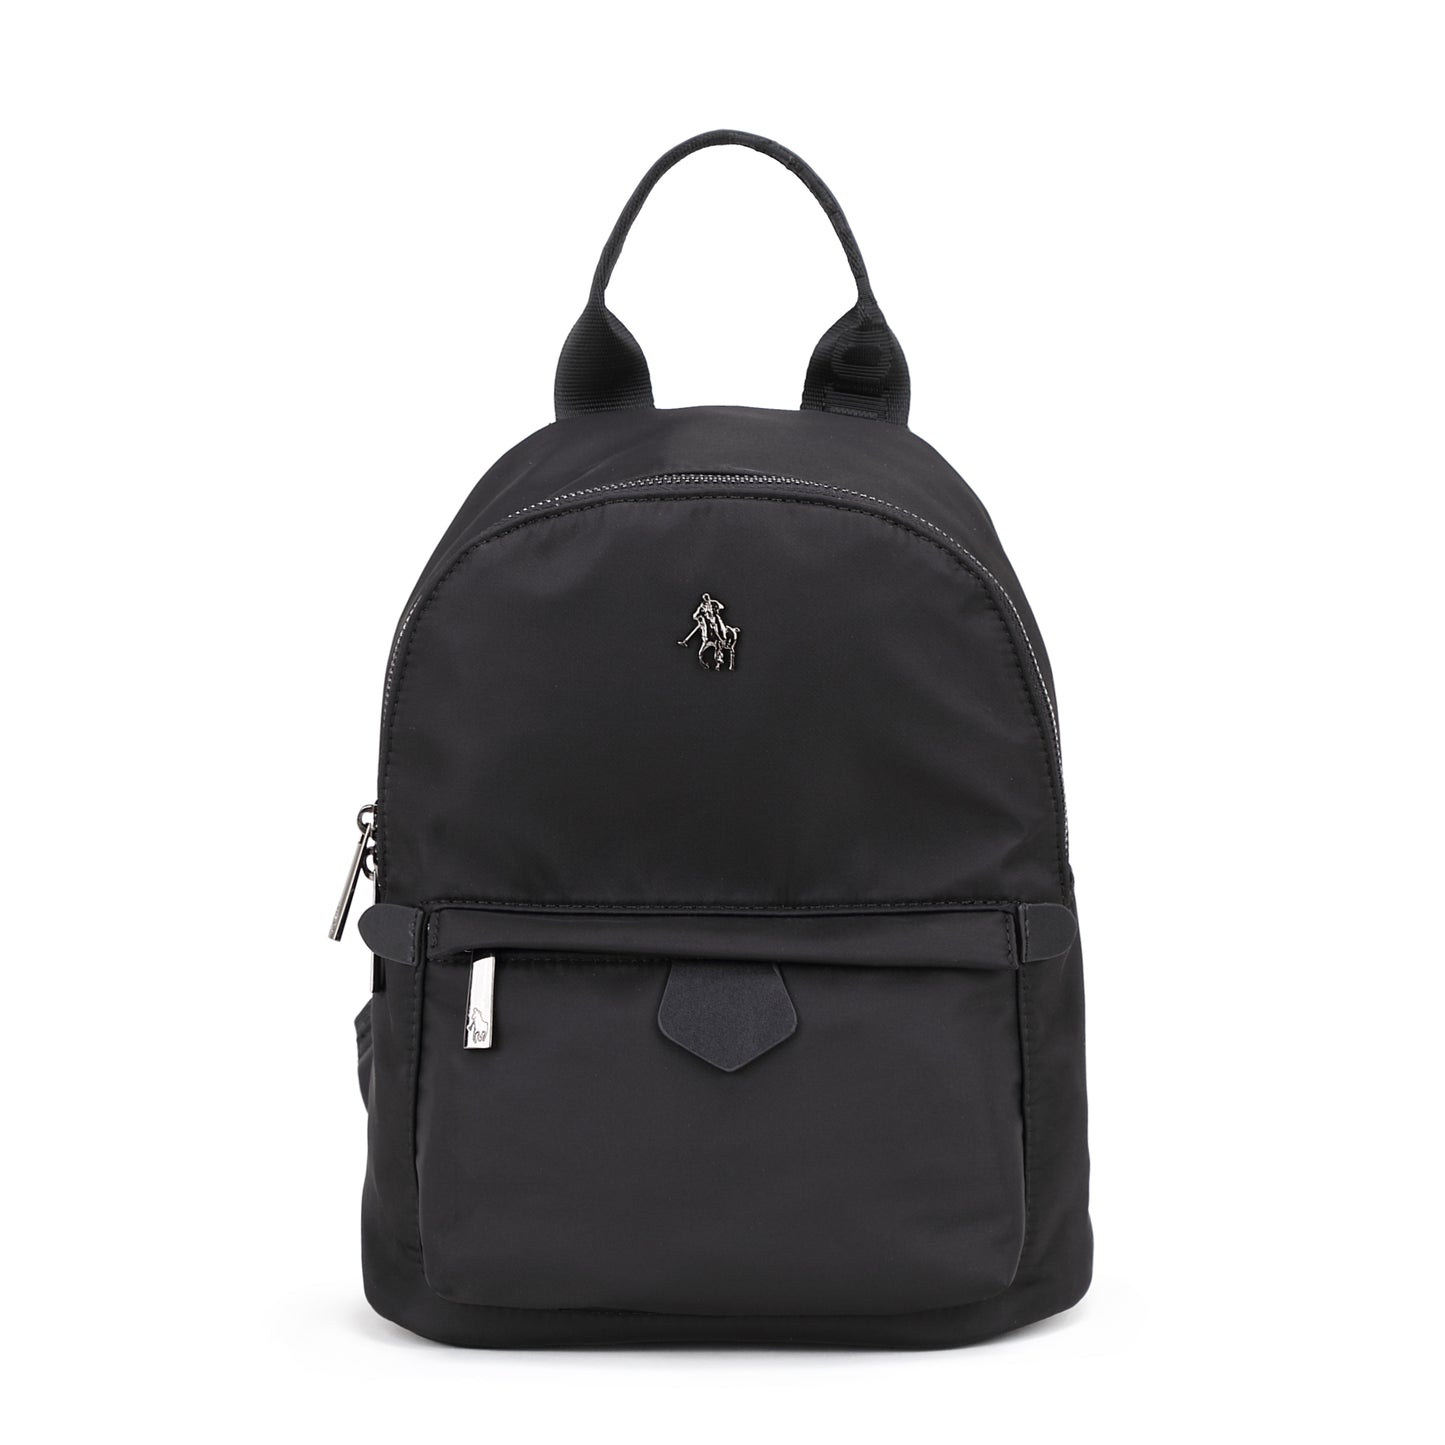 Backpack nylon